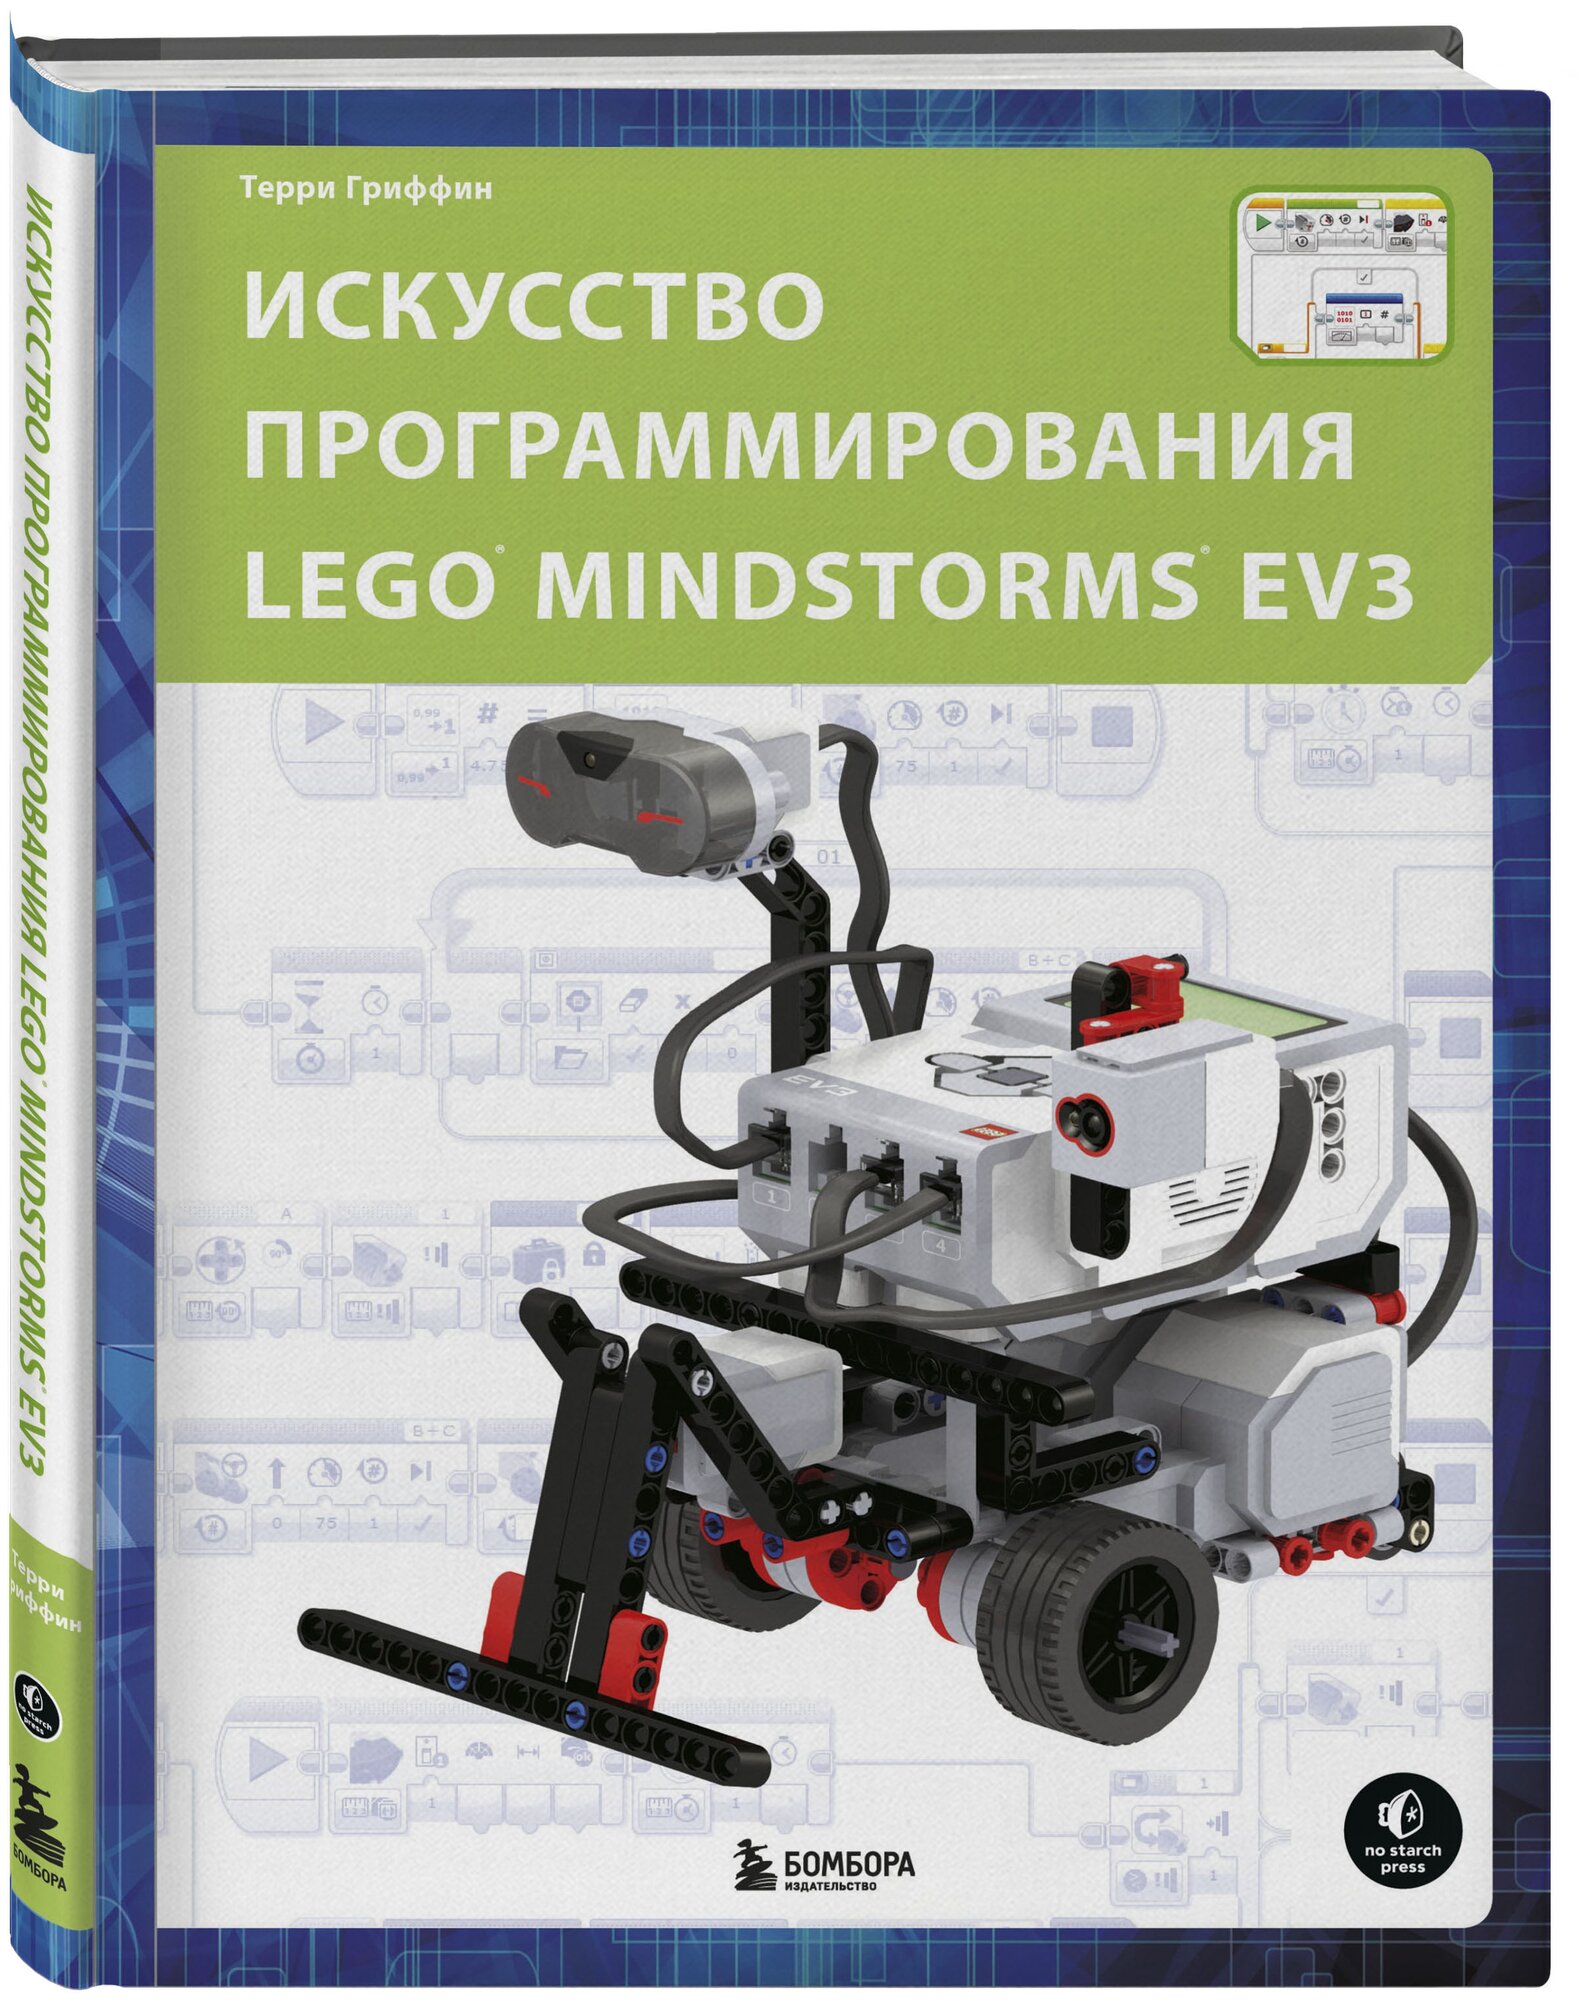 Терри Гриффин "Искусство программирования LEGO MINDSTORMS EV3"